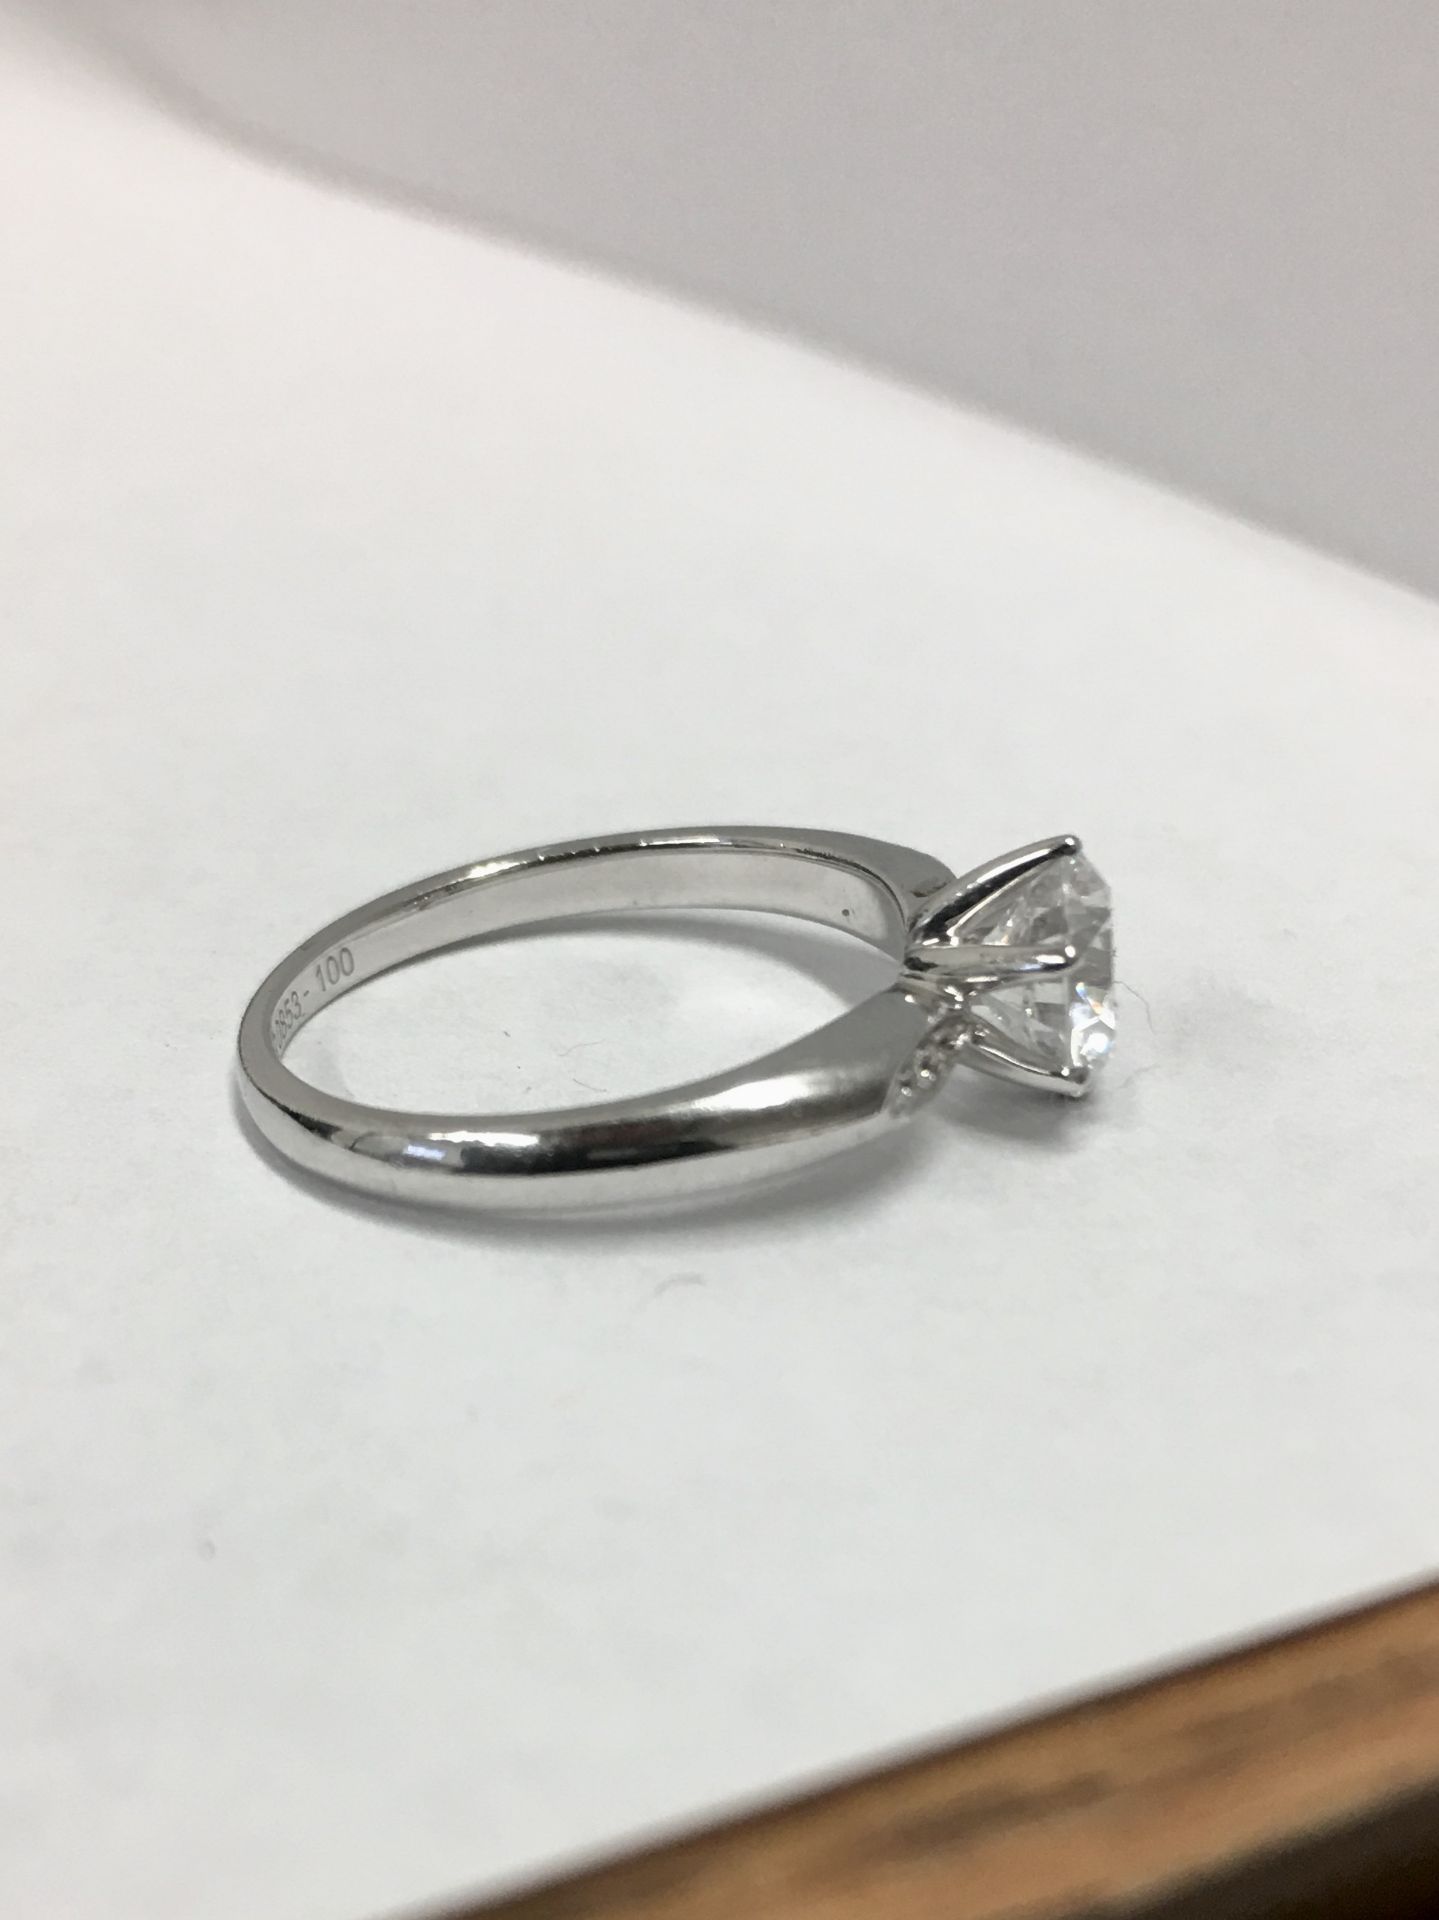 Platinum diamond solitaire ring,0.50ct brilliant cut diamond D colour vs clarity,platinum diamond - Image 2 of 5